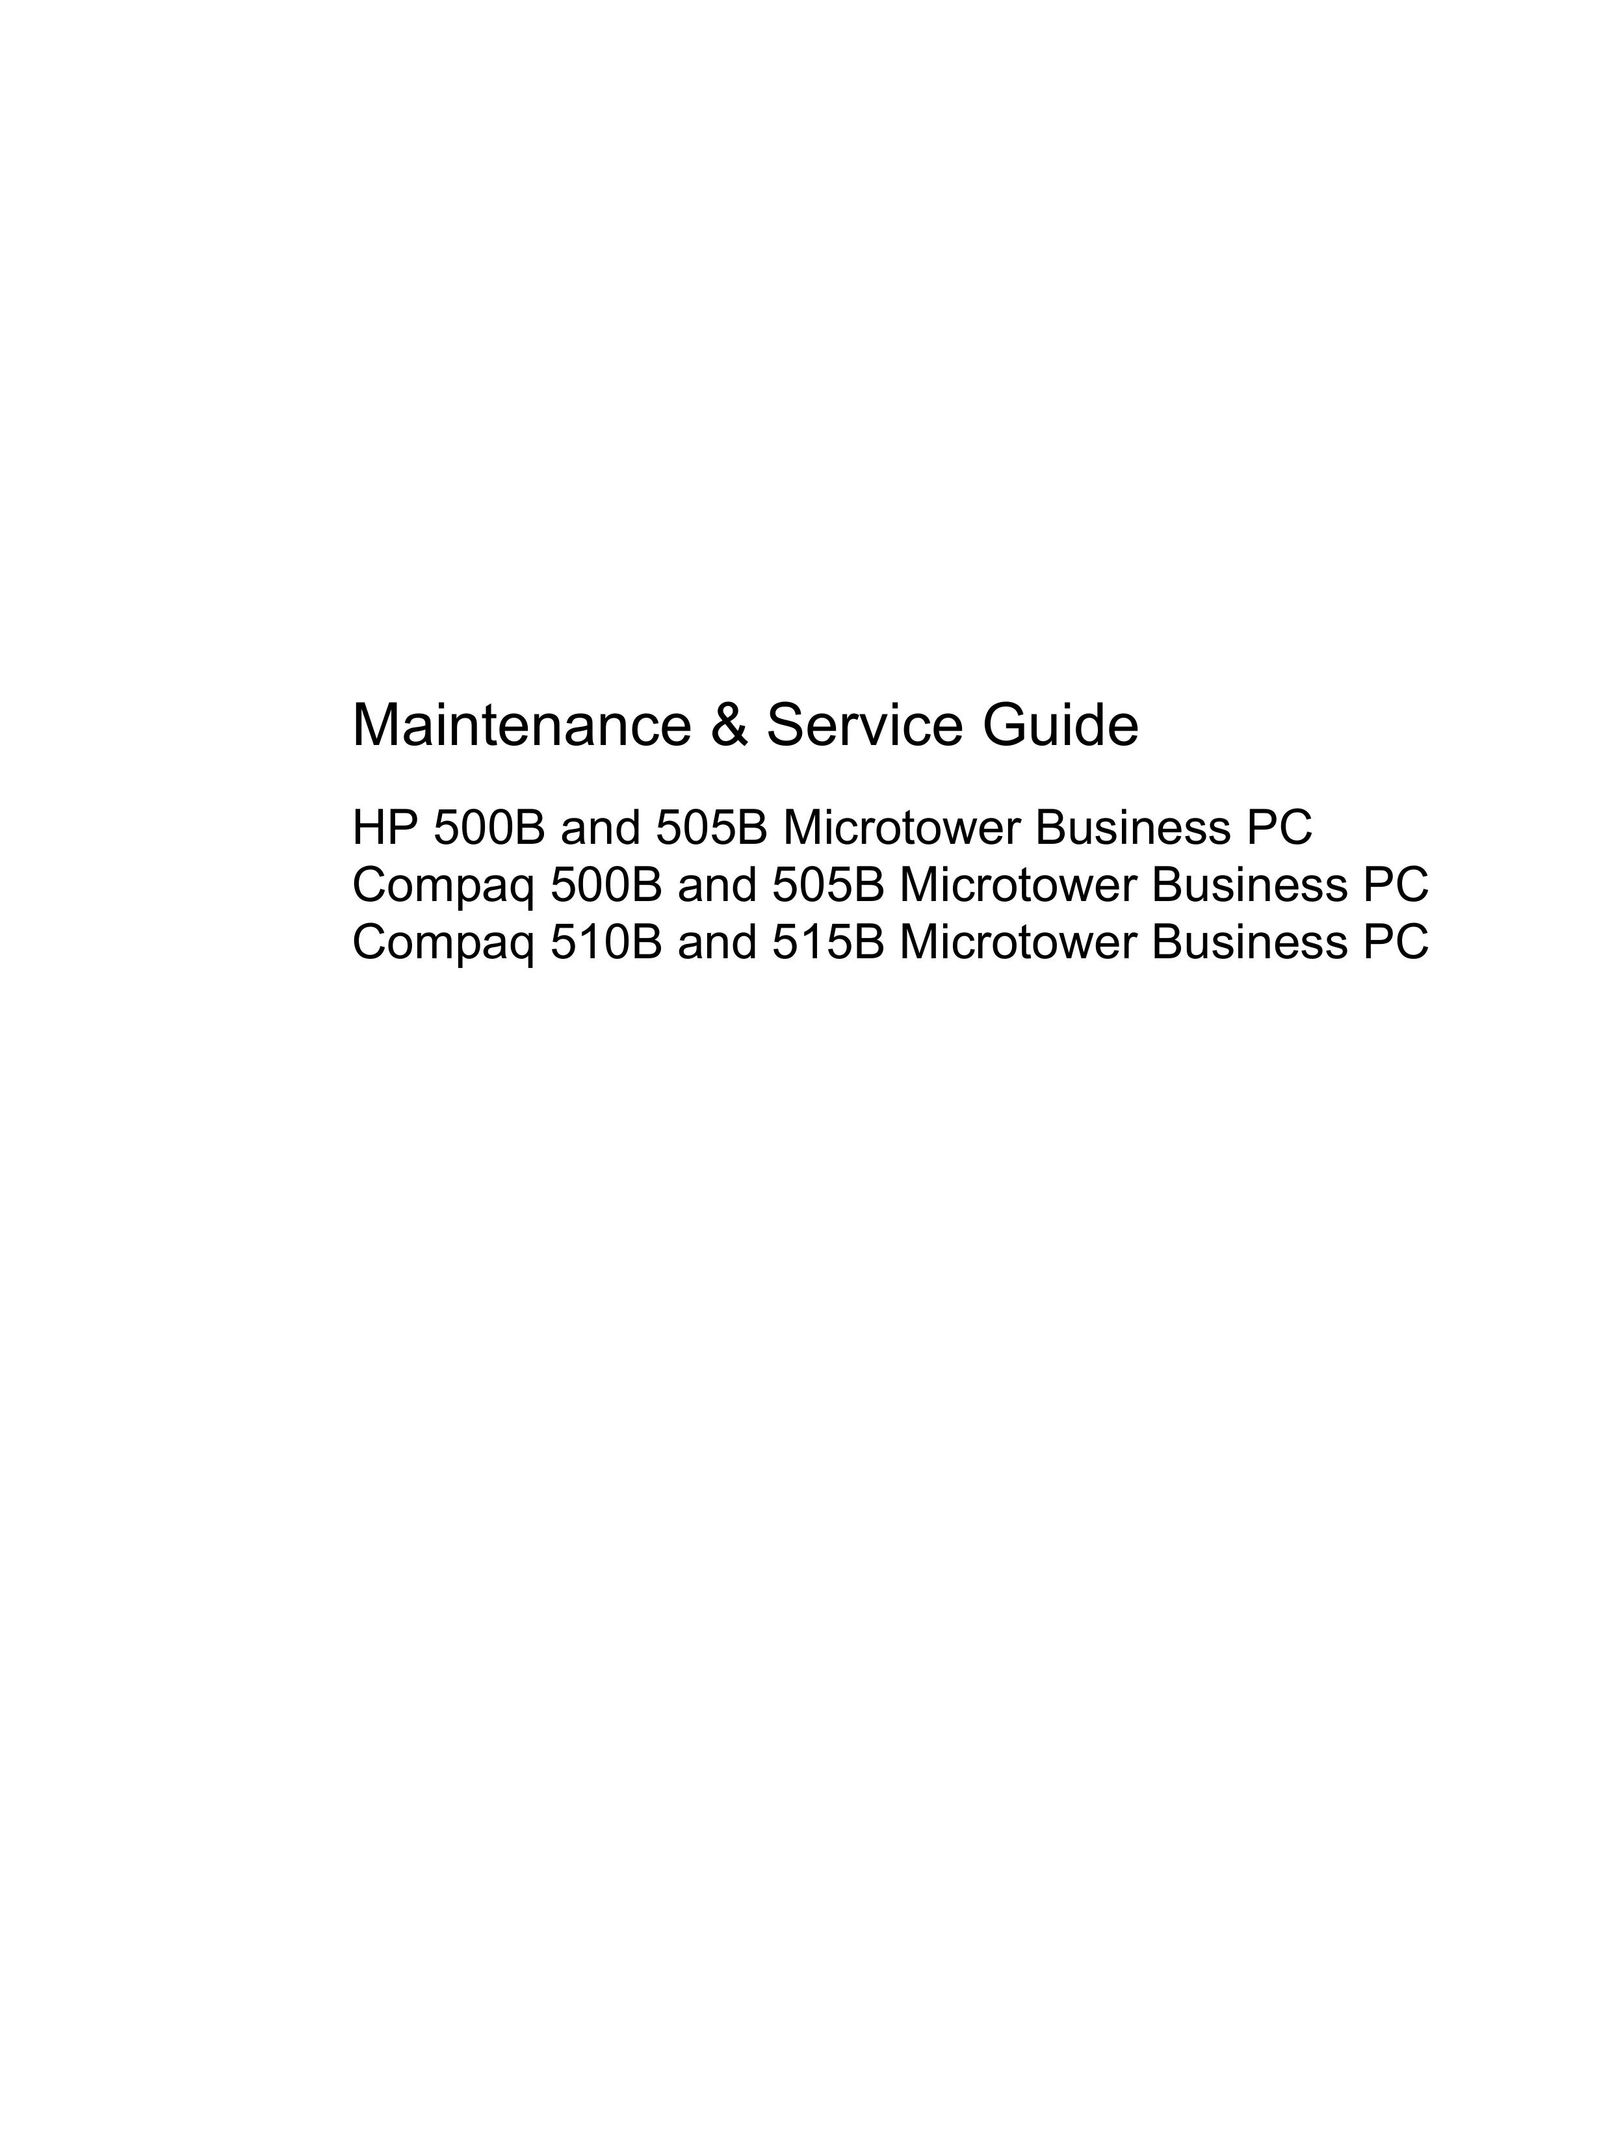 HP (Hewlett-Packard) 510B Personal Computer User Manual